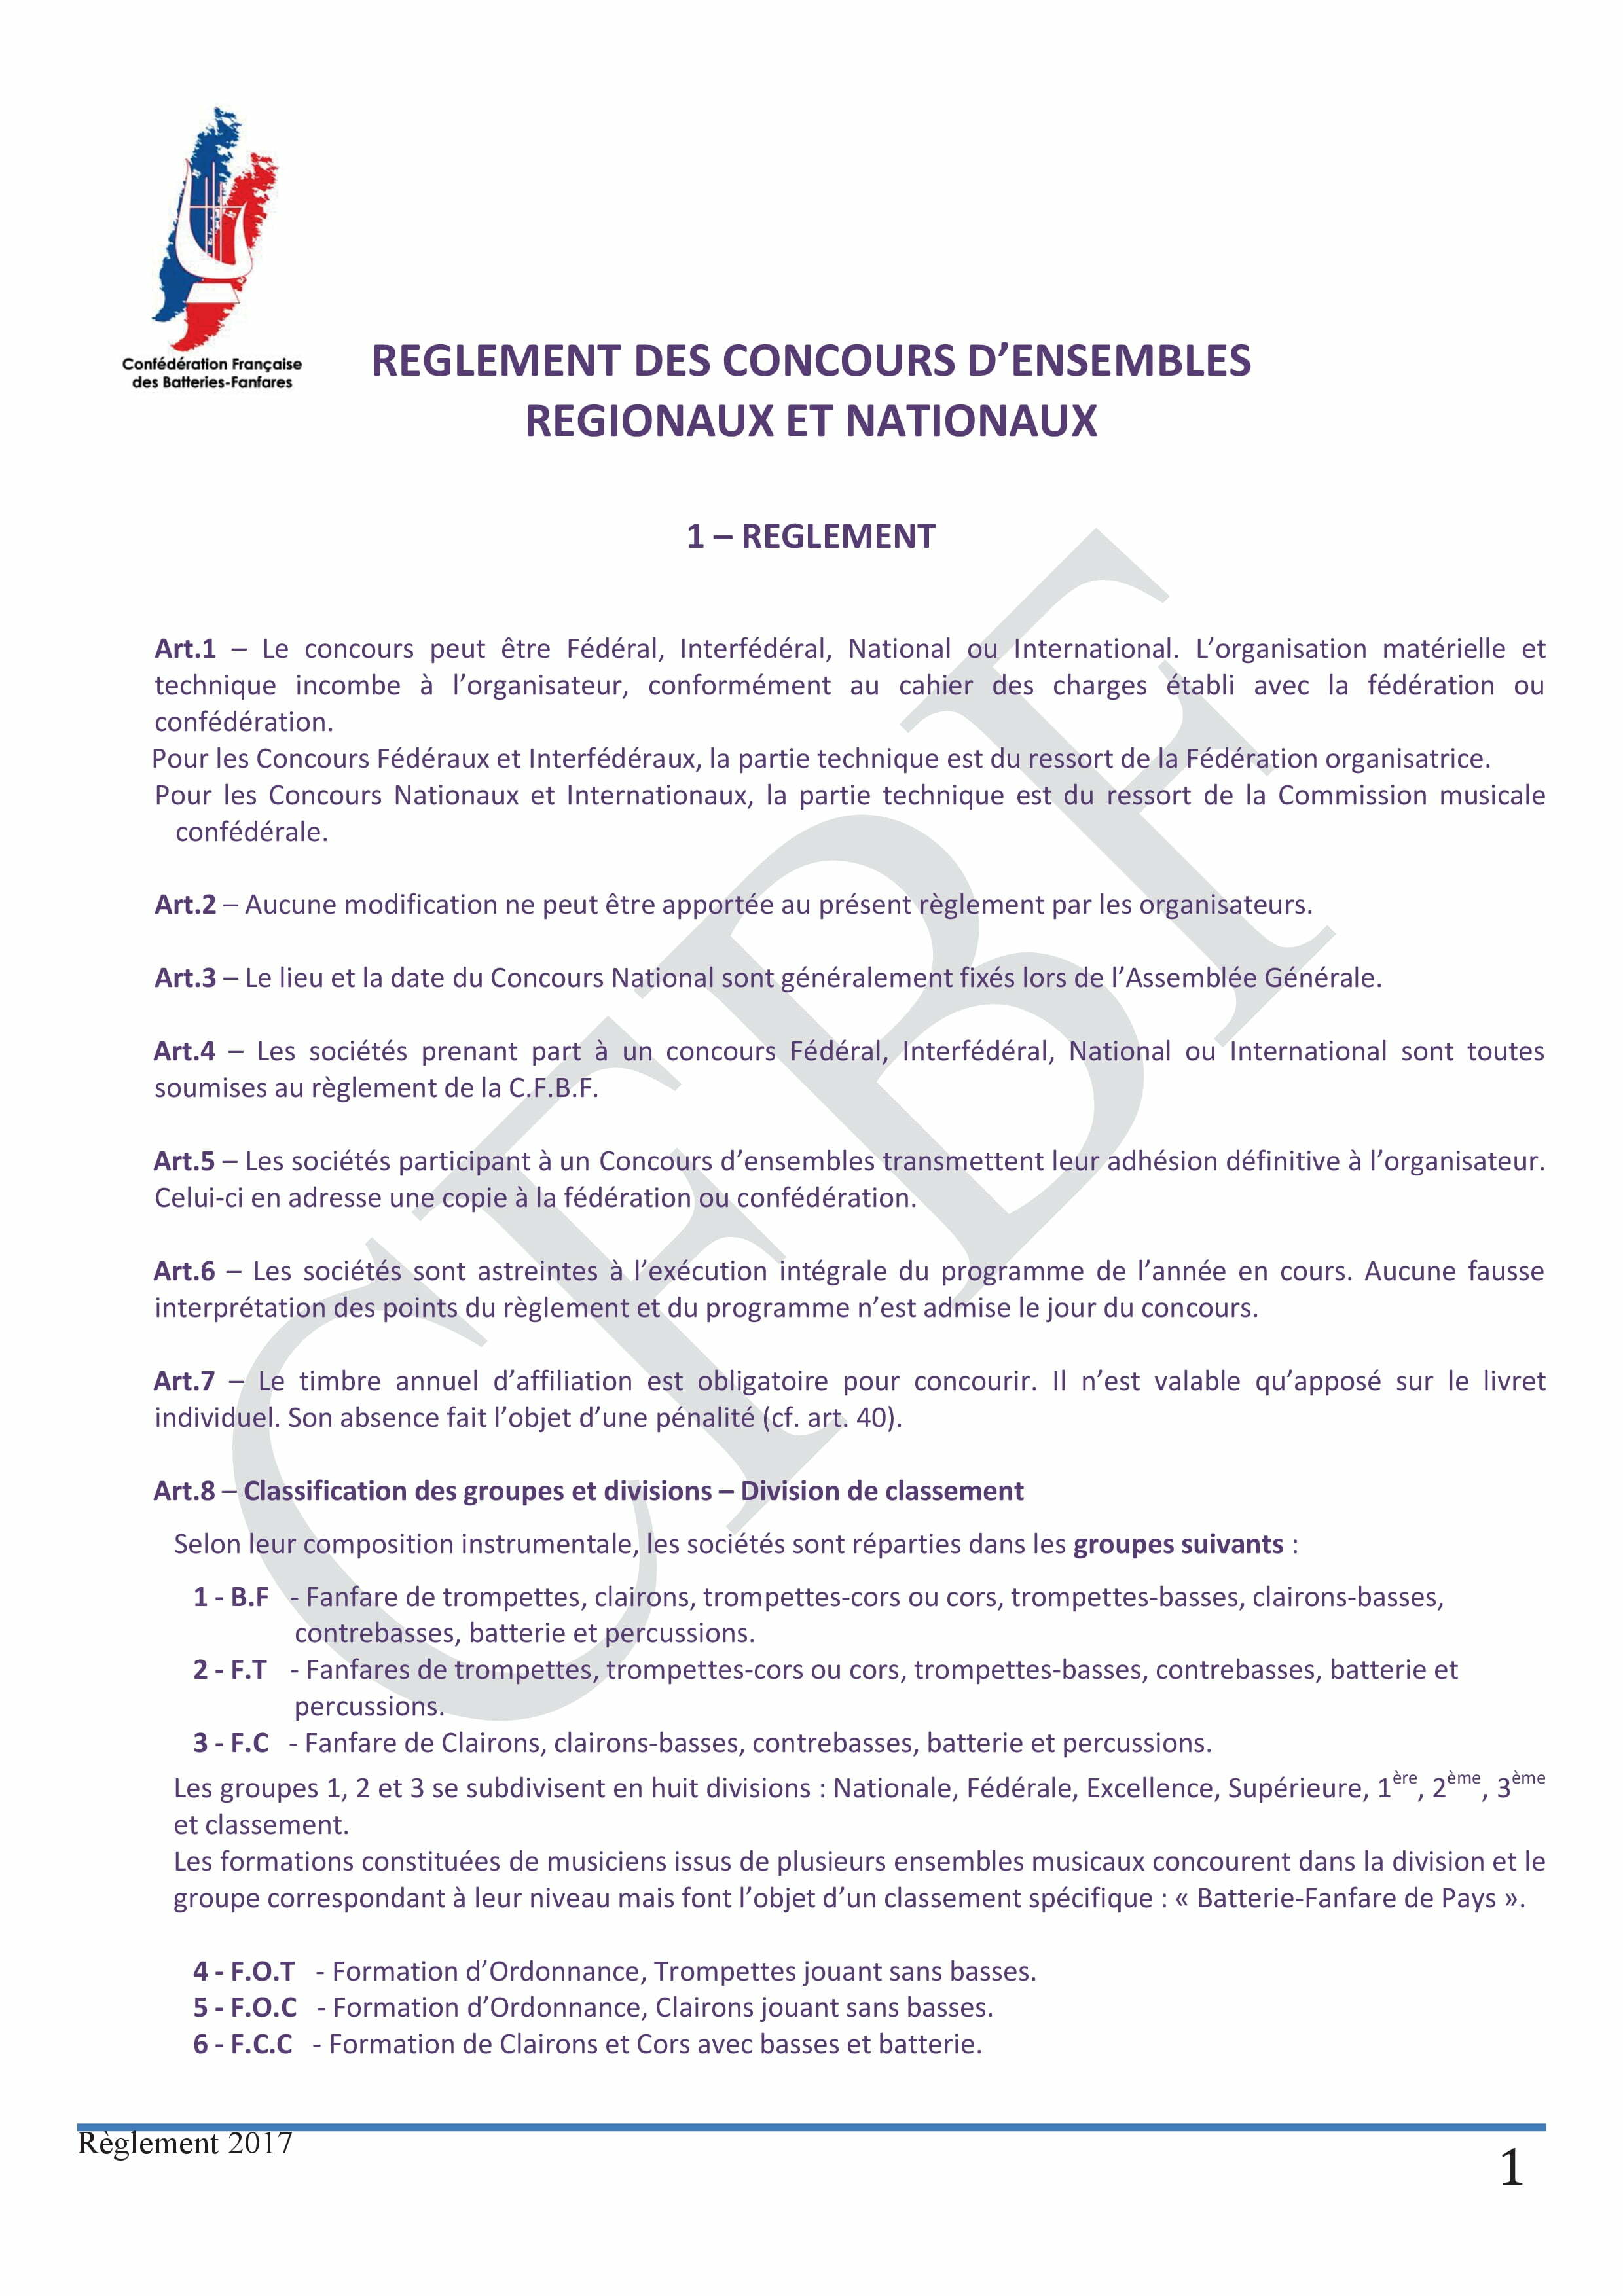 reglement-concours-densemble-version-presentee-en-ca-nov16-11